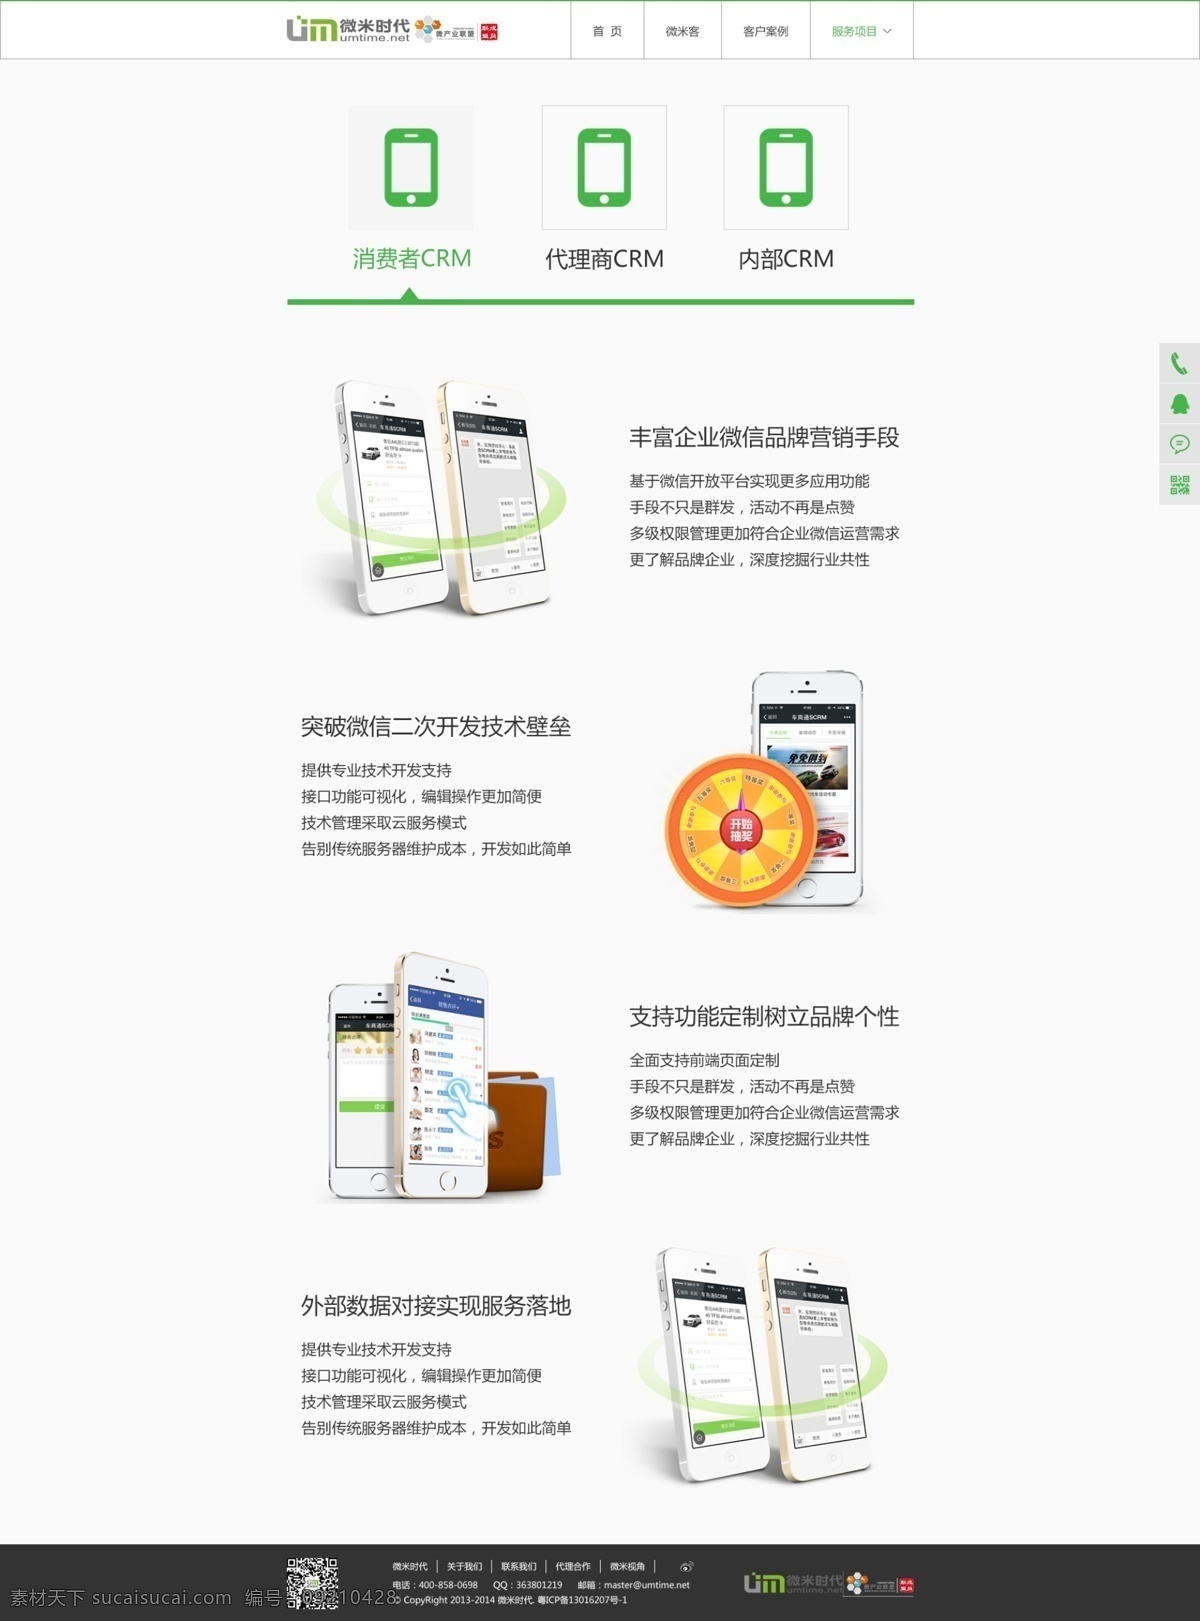 微 信 crm 系统 定制 内页 微信 中文模板 官网 web 界面设计 网页素材 其他网页素材